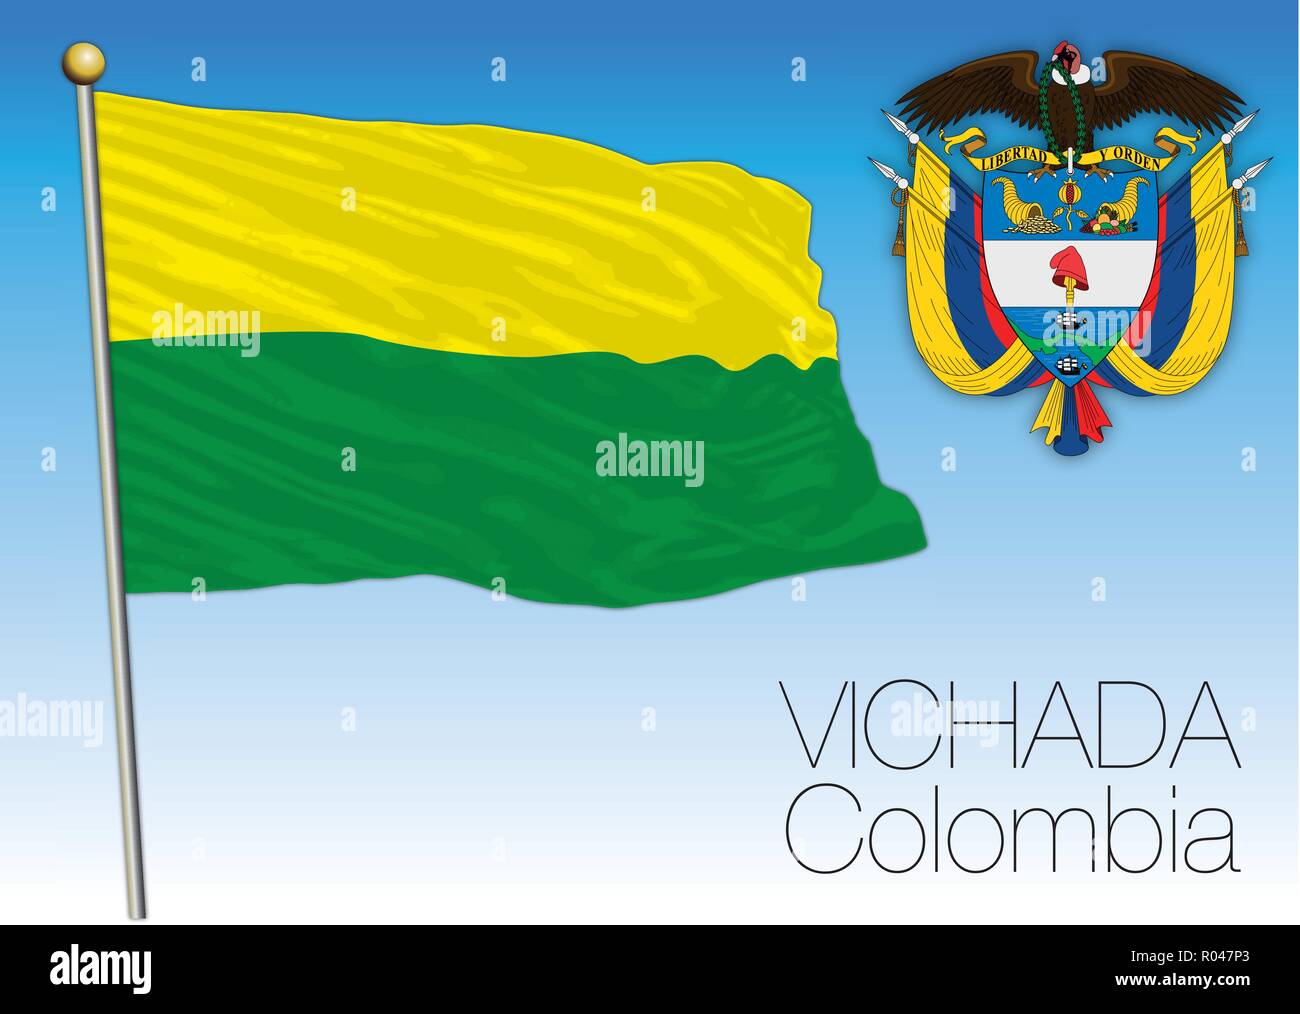 Vichada regional flag, Republica de Colombia, vector illustration Stock Vector